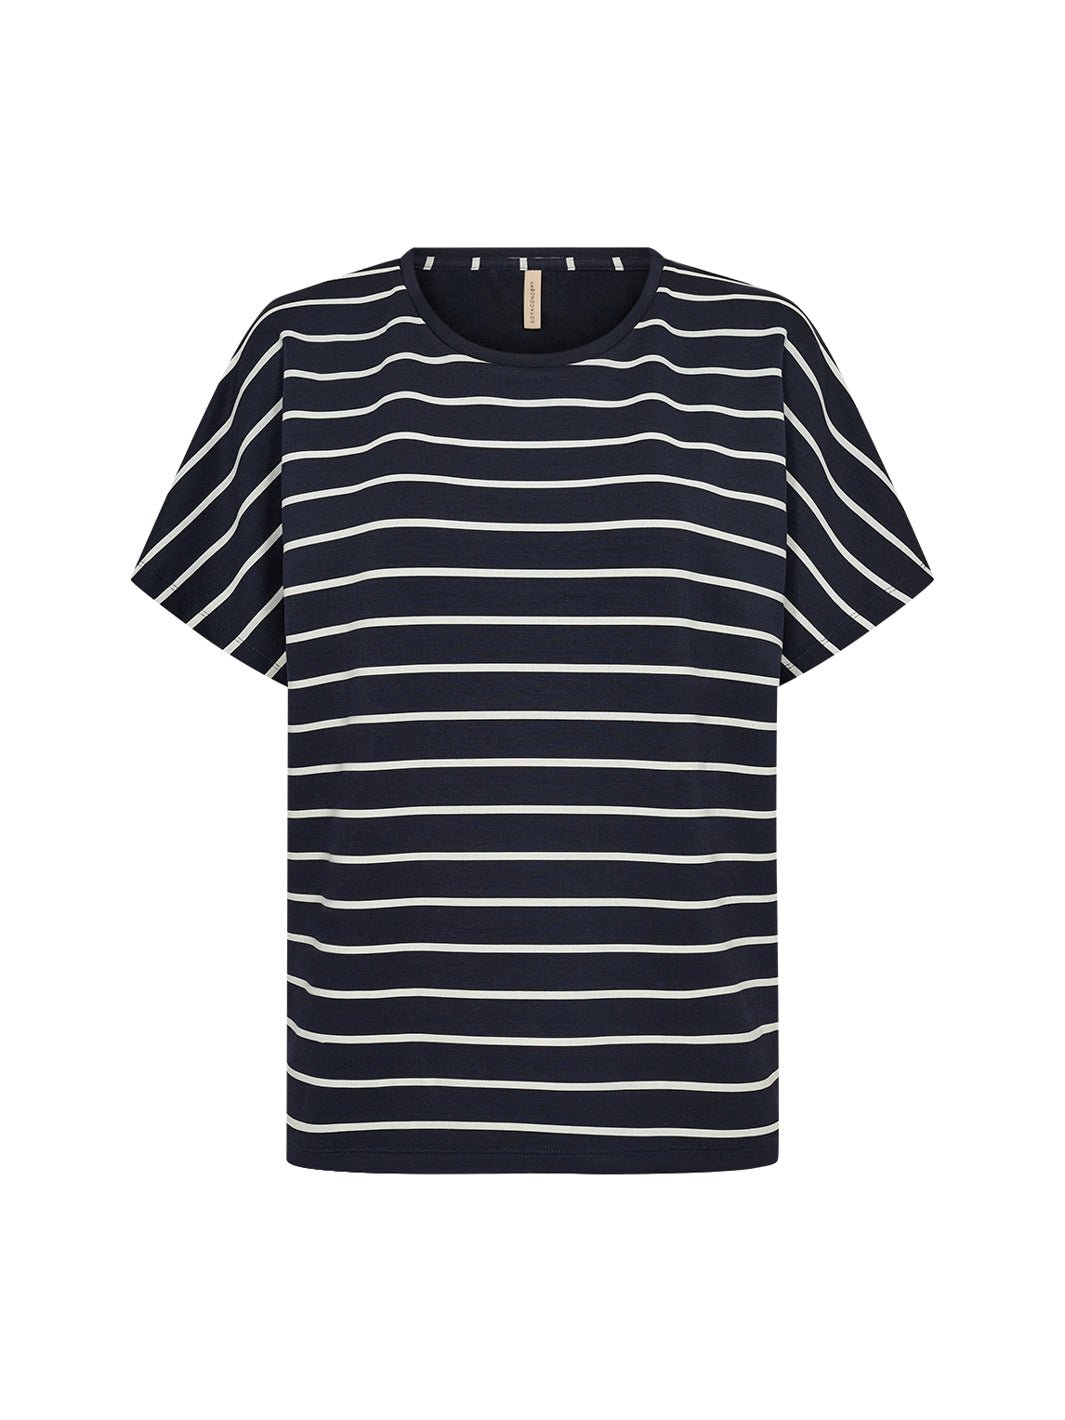 Soya Concept Barni 22 t-shirt navy - Online-Mode